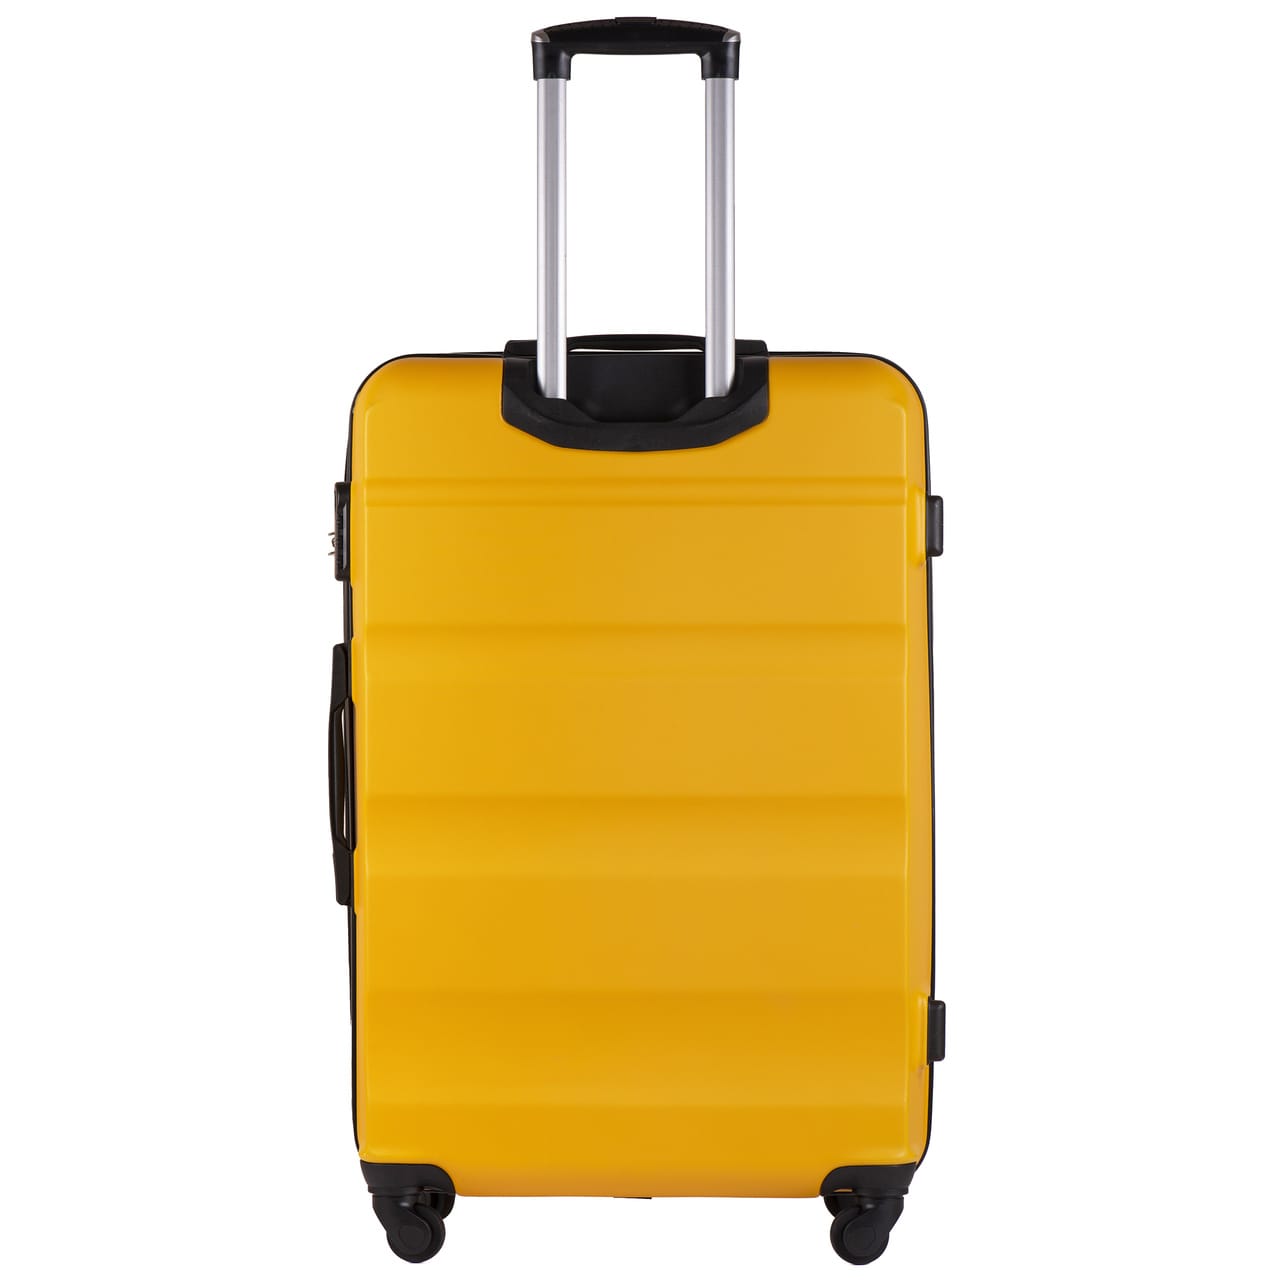 AT01-kollane-suur-reisikohver-L-ABSplastik-97l-kohvrimaailm-tagant.jpg